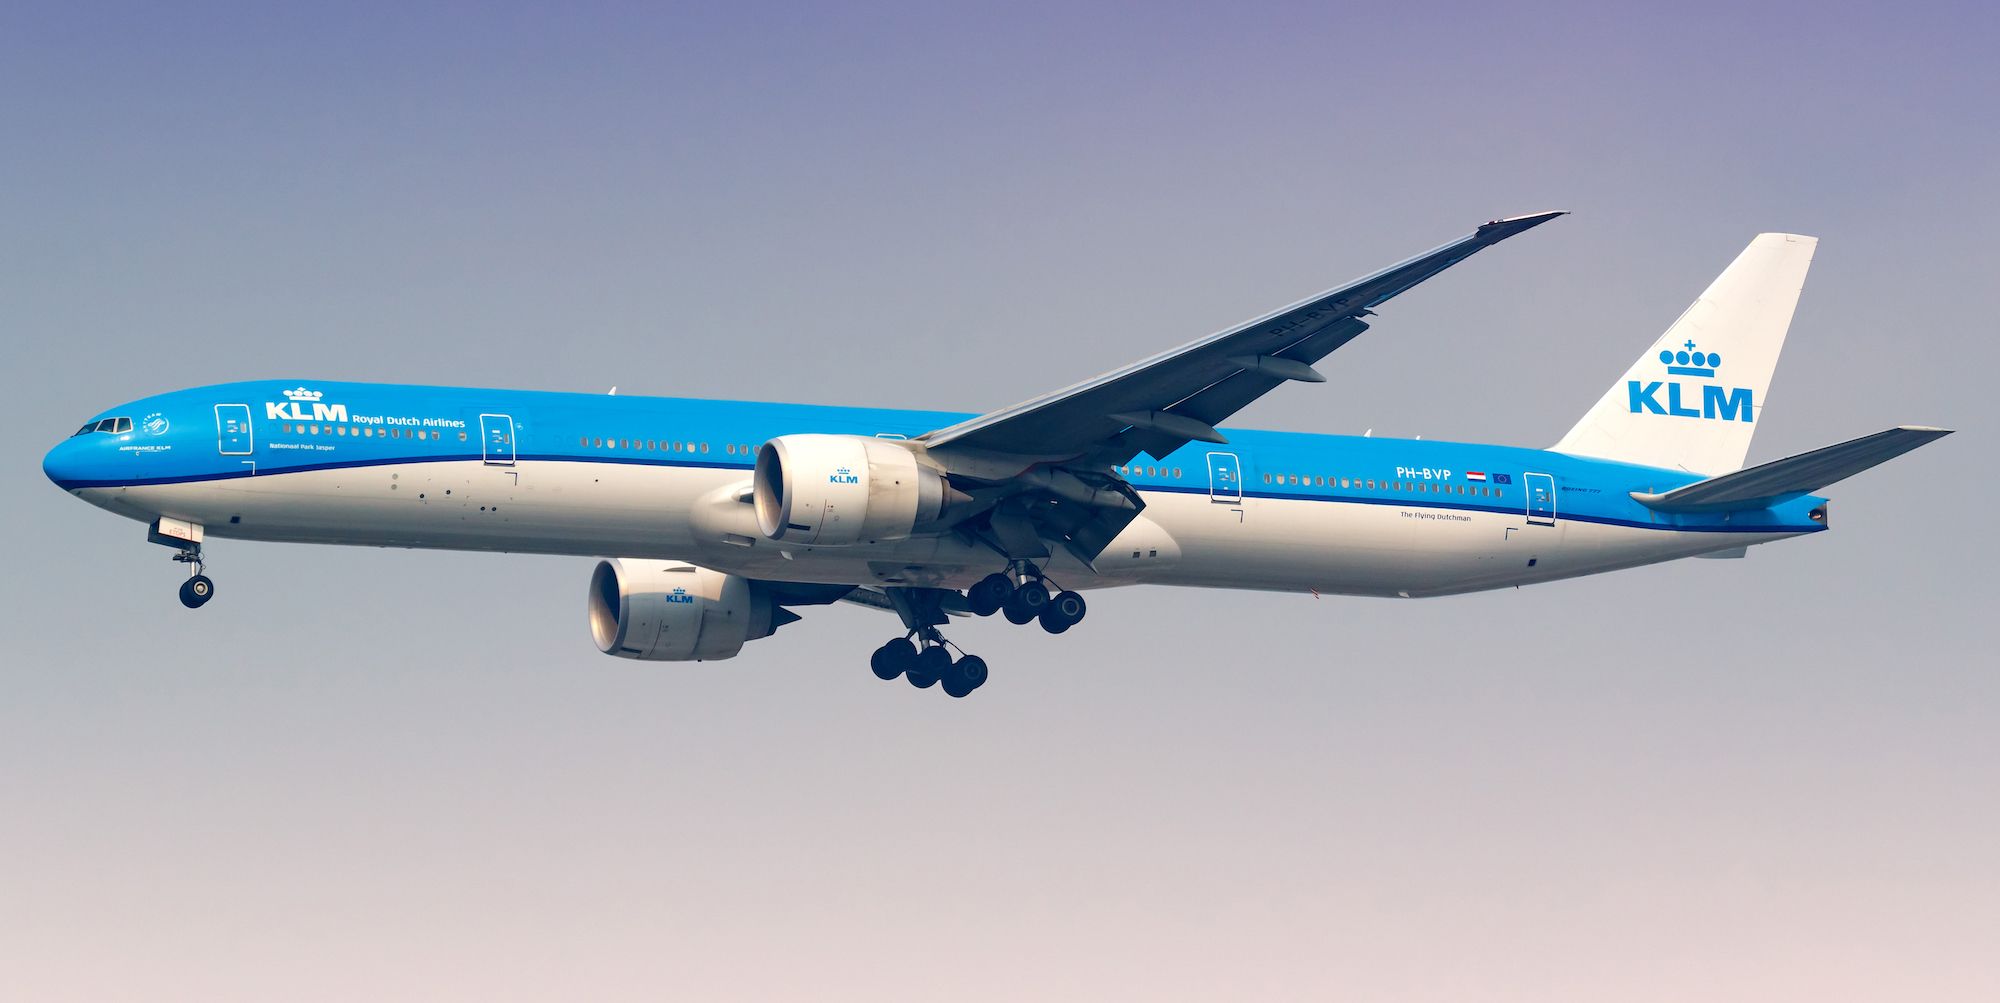 A KLM 777-300ER flying in the sky.